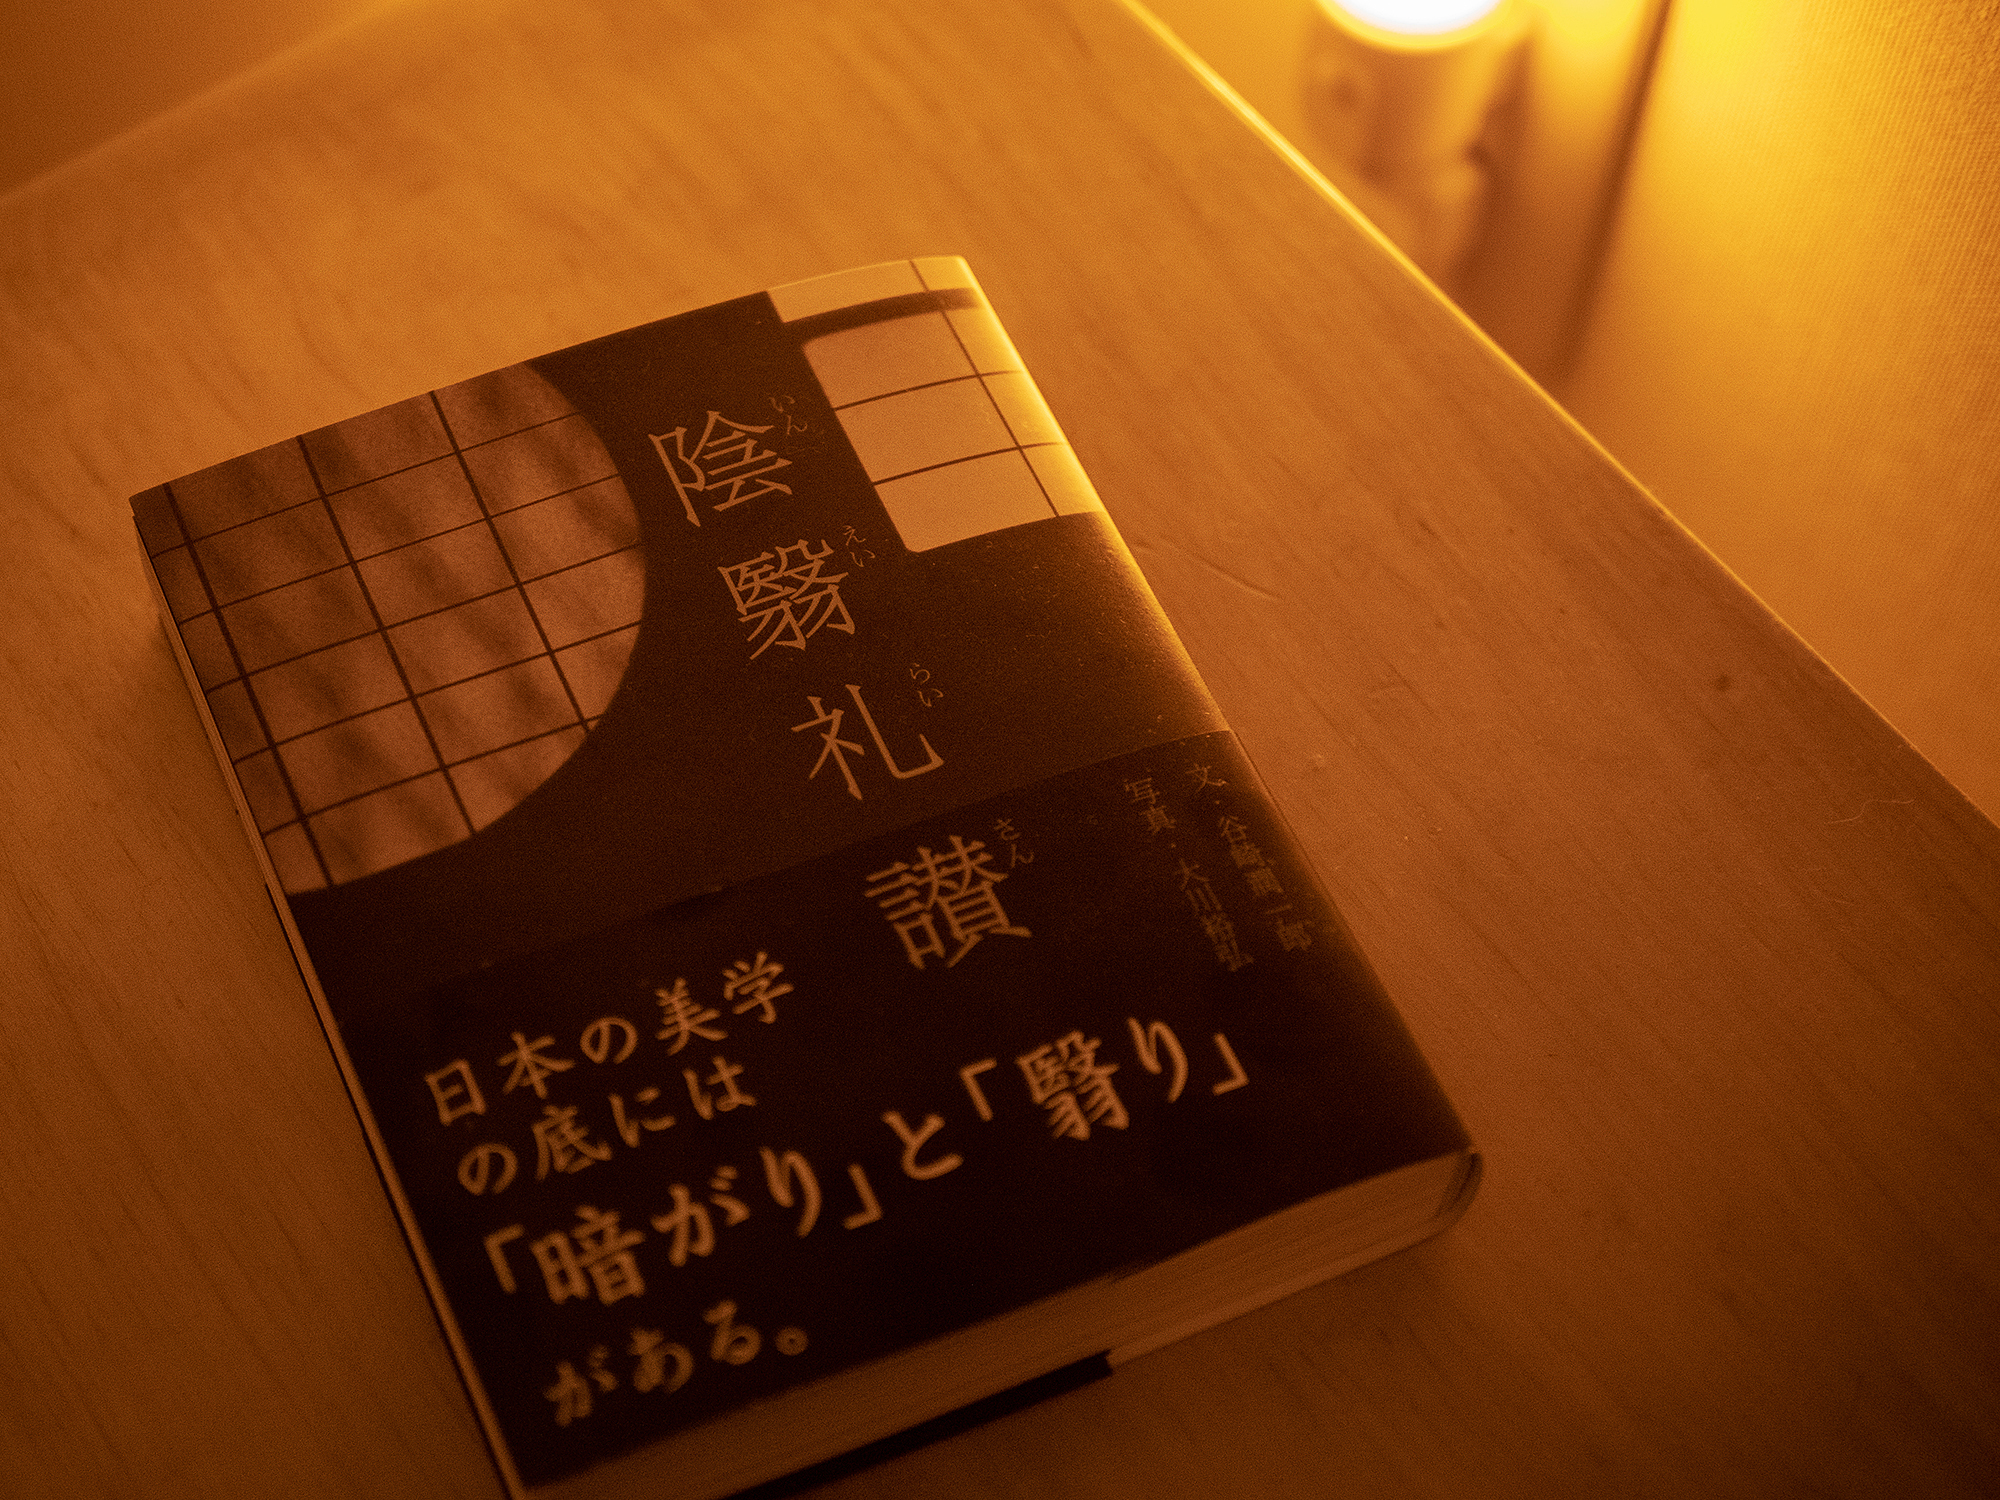 日本の美に触れる「陰翳礼讃」を読んで